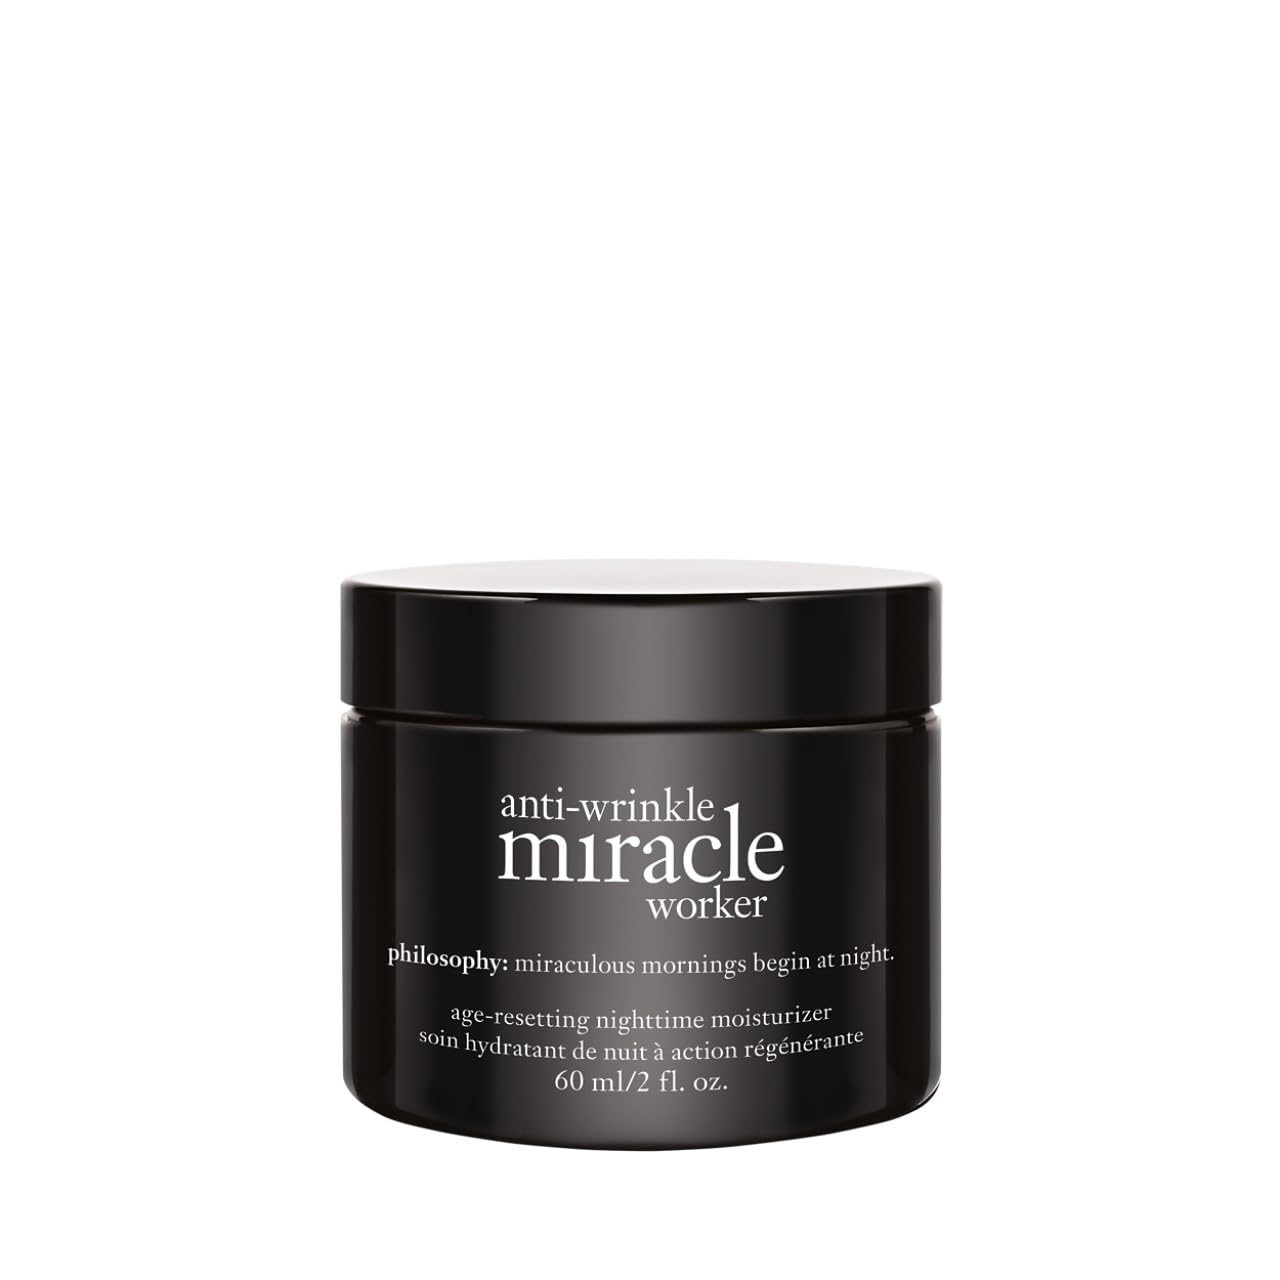 philosophy anti-wrinkle miracle worker - night cream, 2